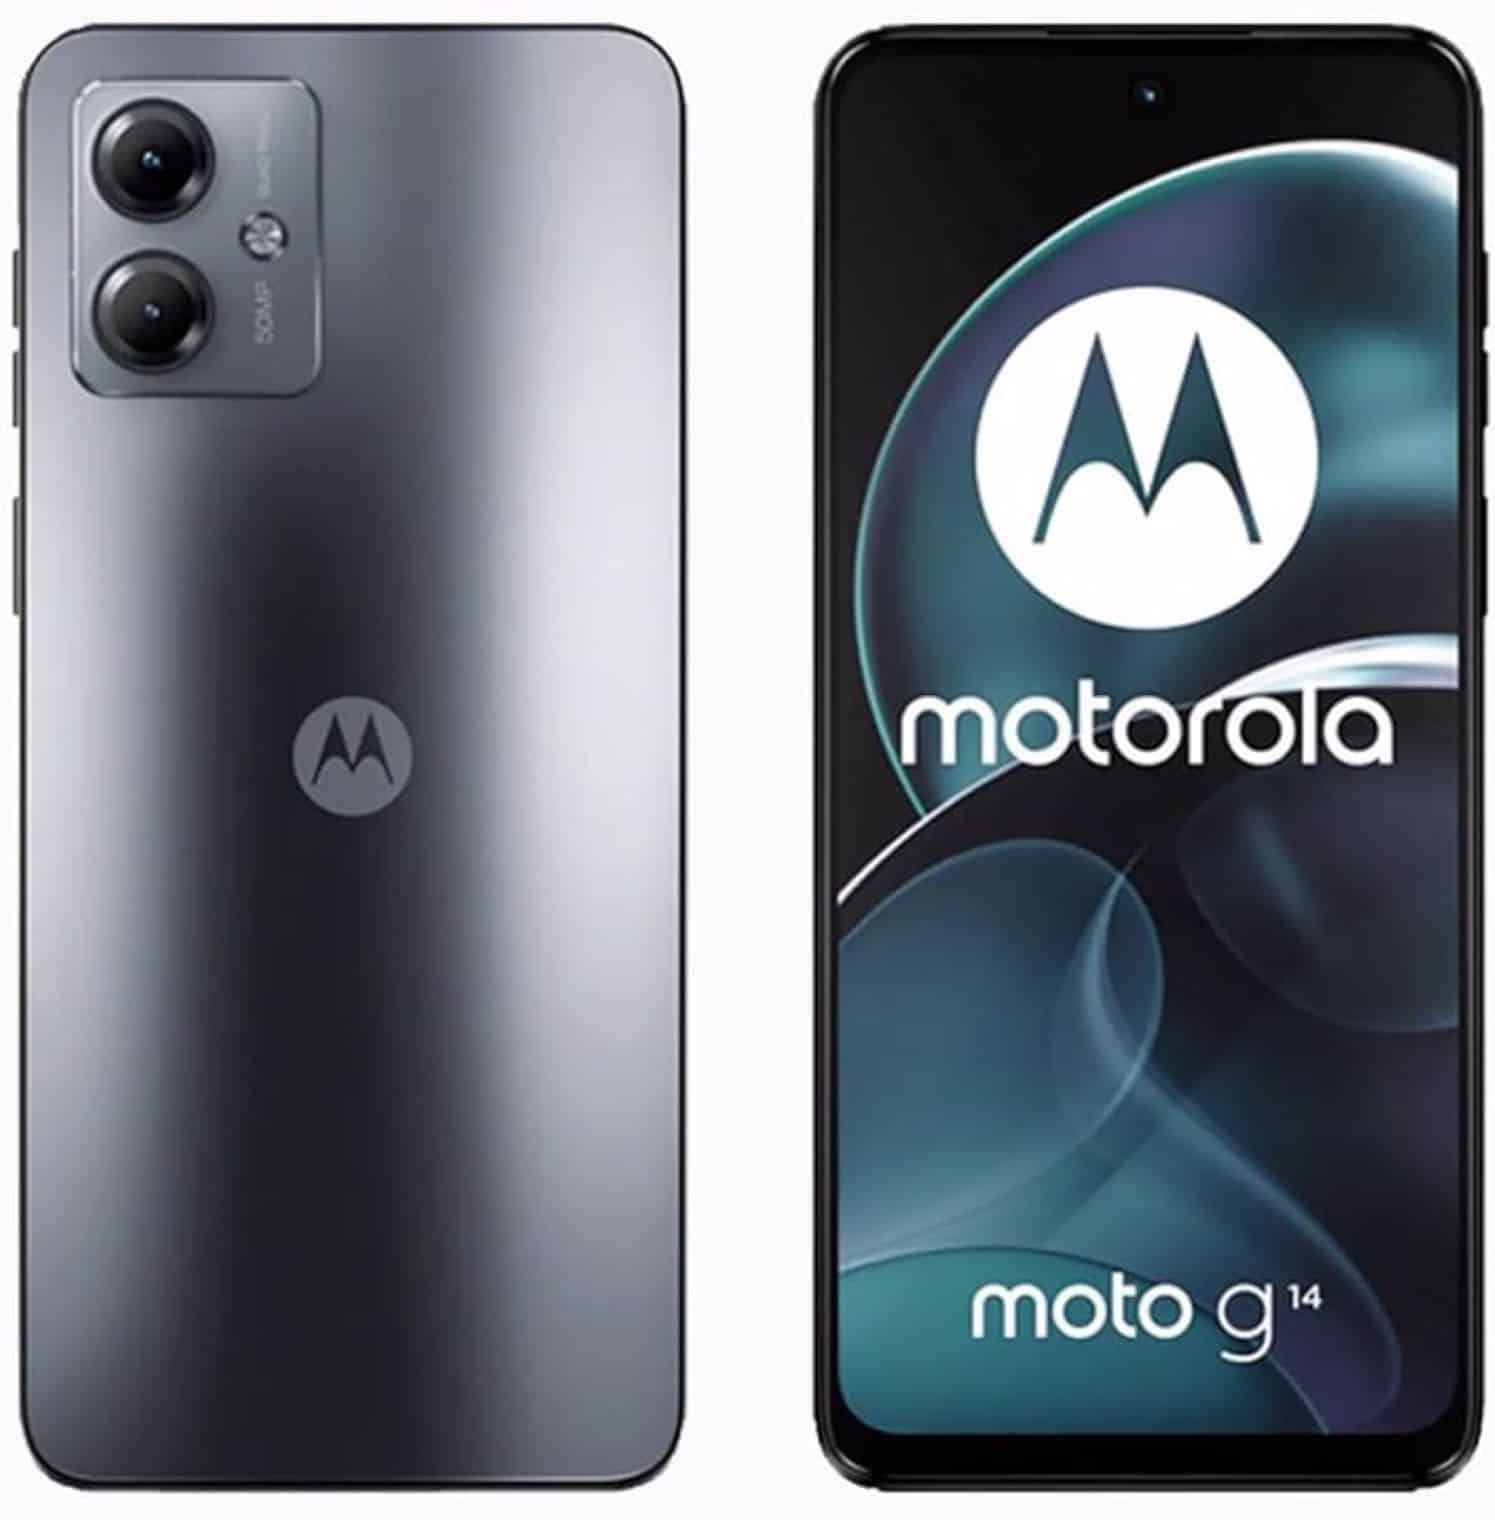 Smartphone Motorola Moto G14 de gama media y batería de larga duración